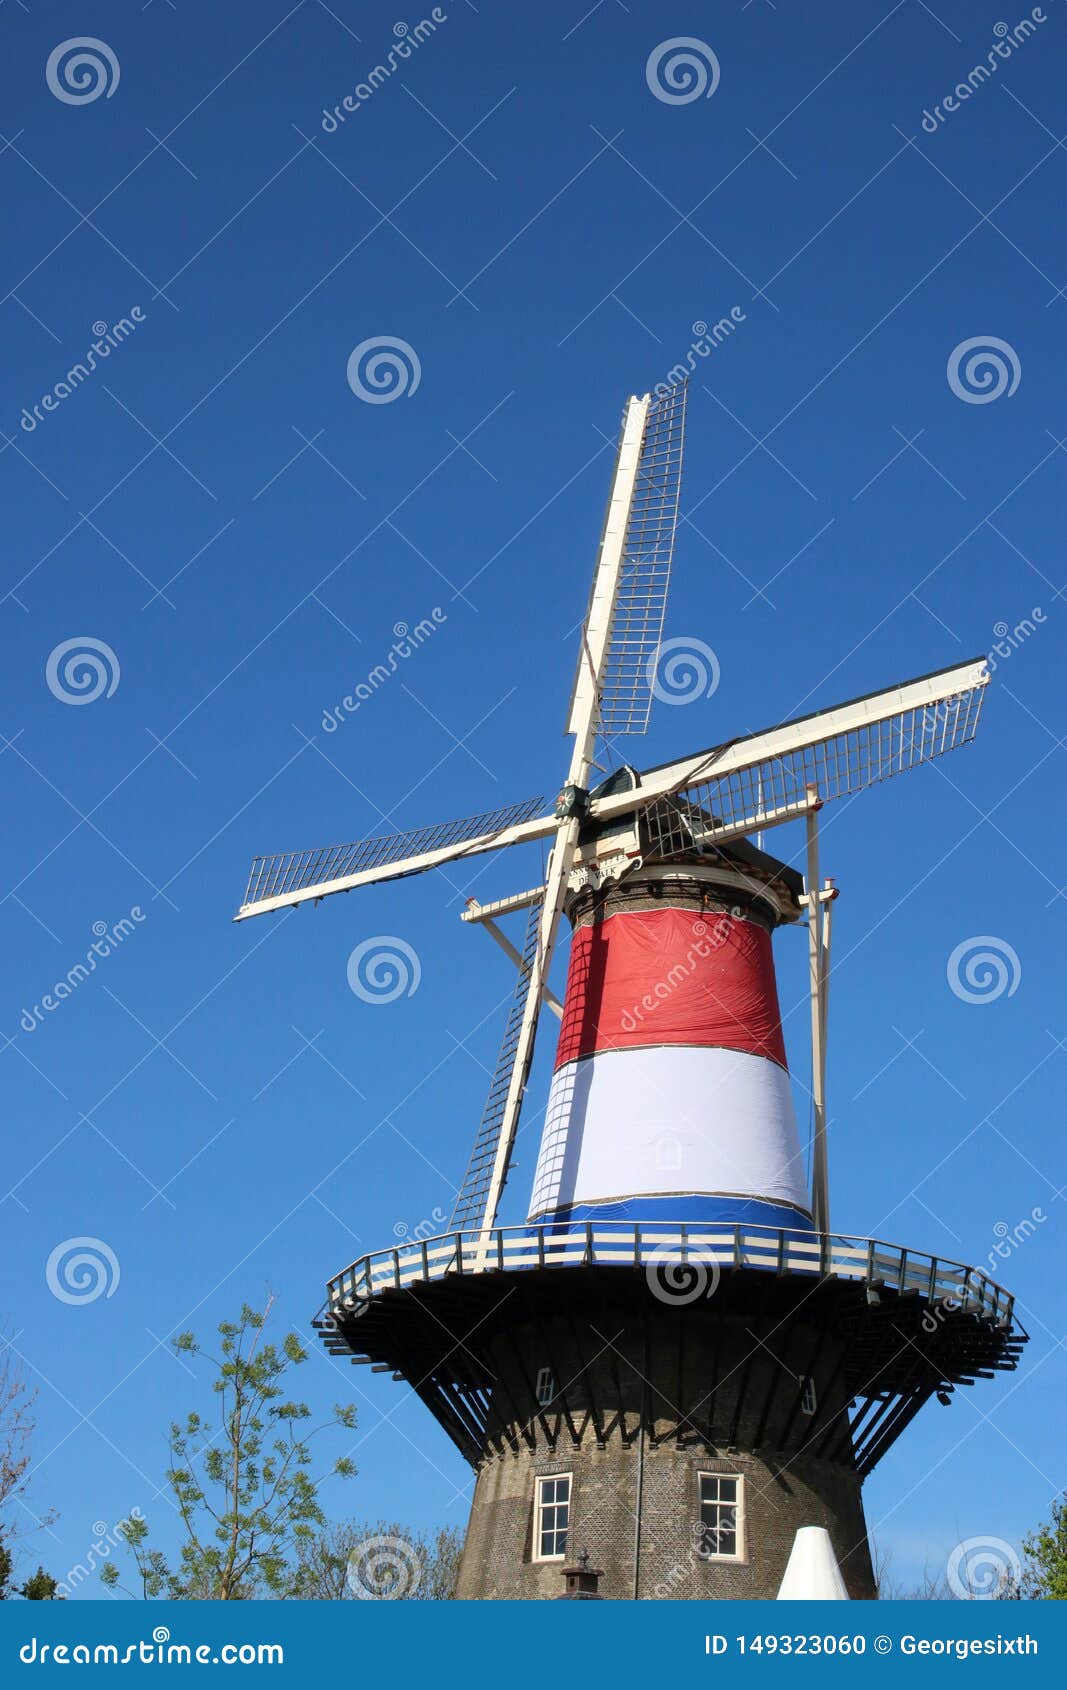 Molen De Valk Windmill In Leiden Netherlands Editorial Image Image Of Sunny Windmill 149323060 